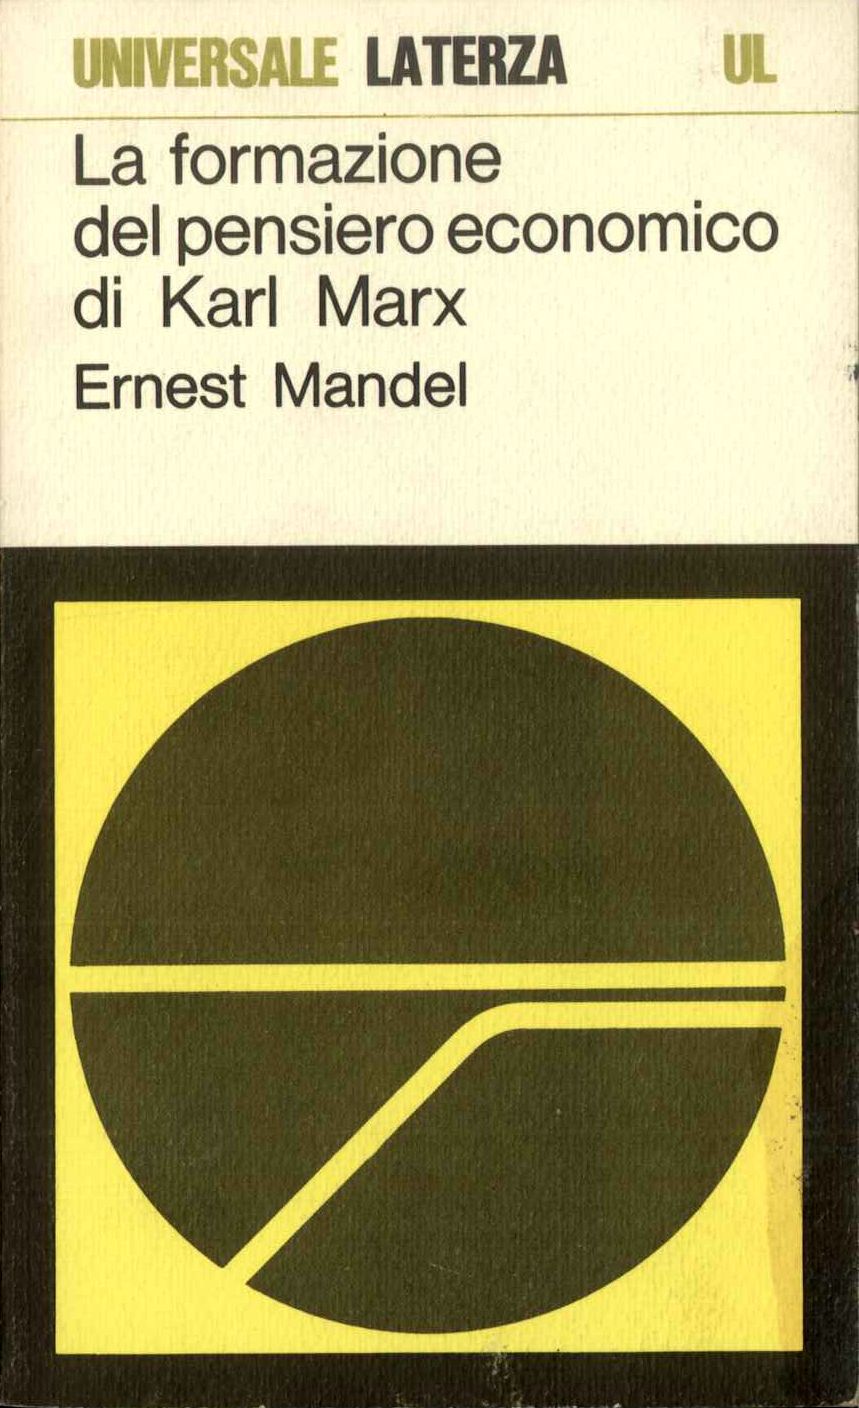 La formazione del pensiero economico di Karl Marx